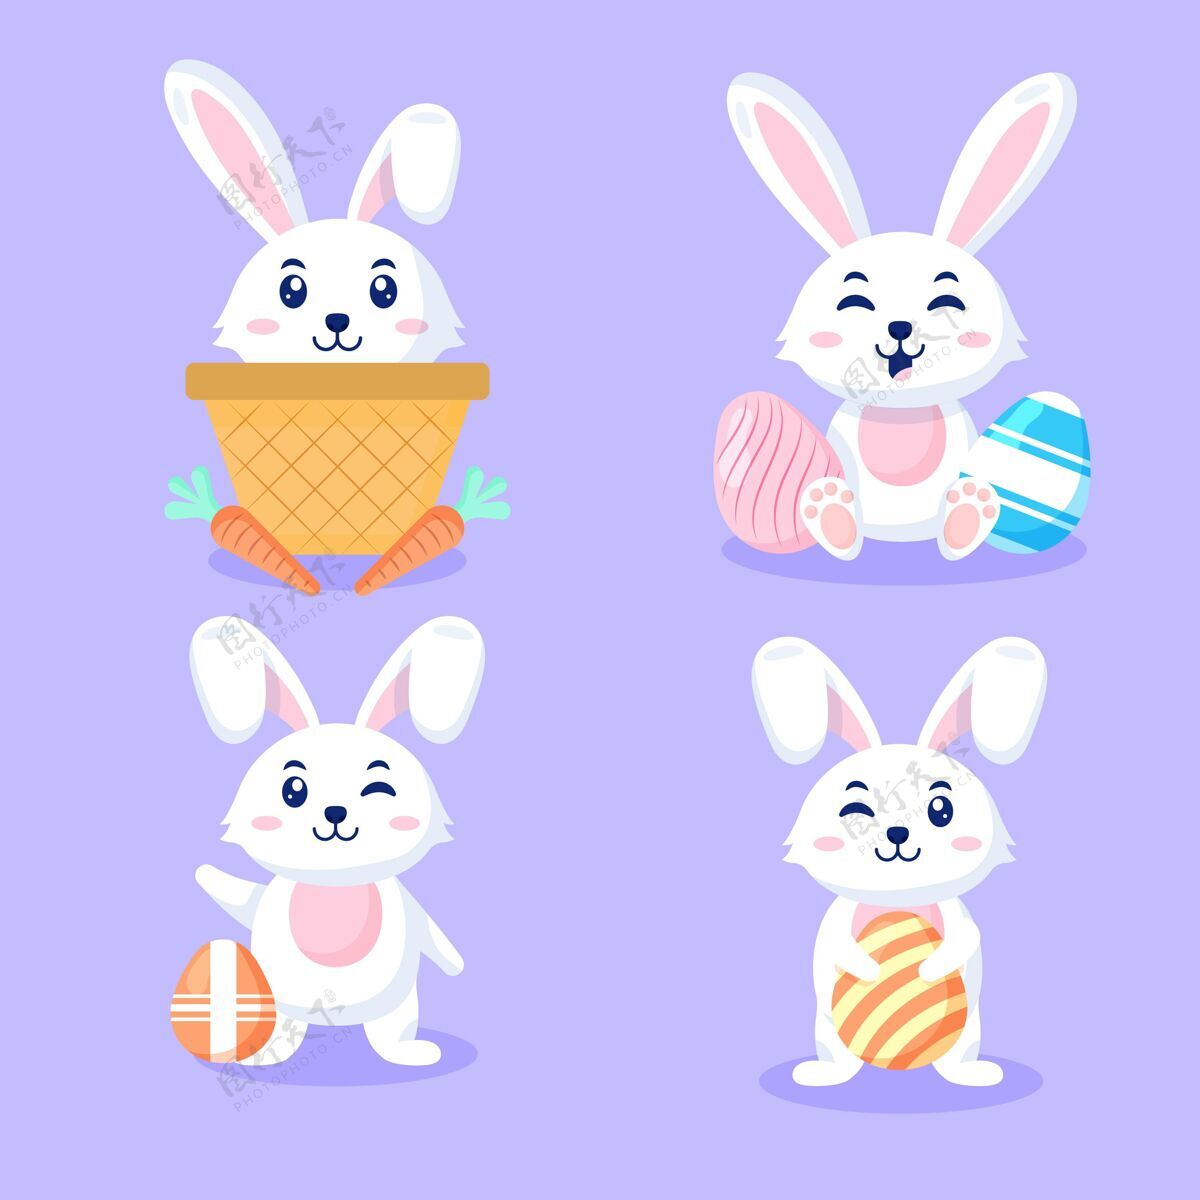 宗教复活节兔子系列单位设计帕斯卡插图